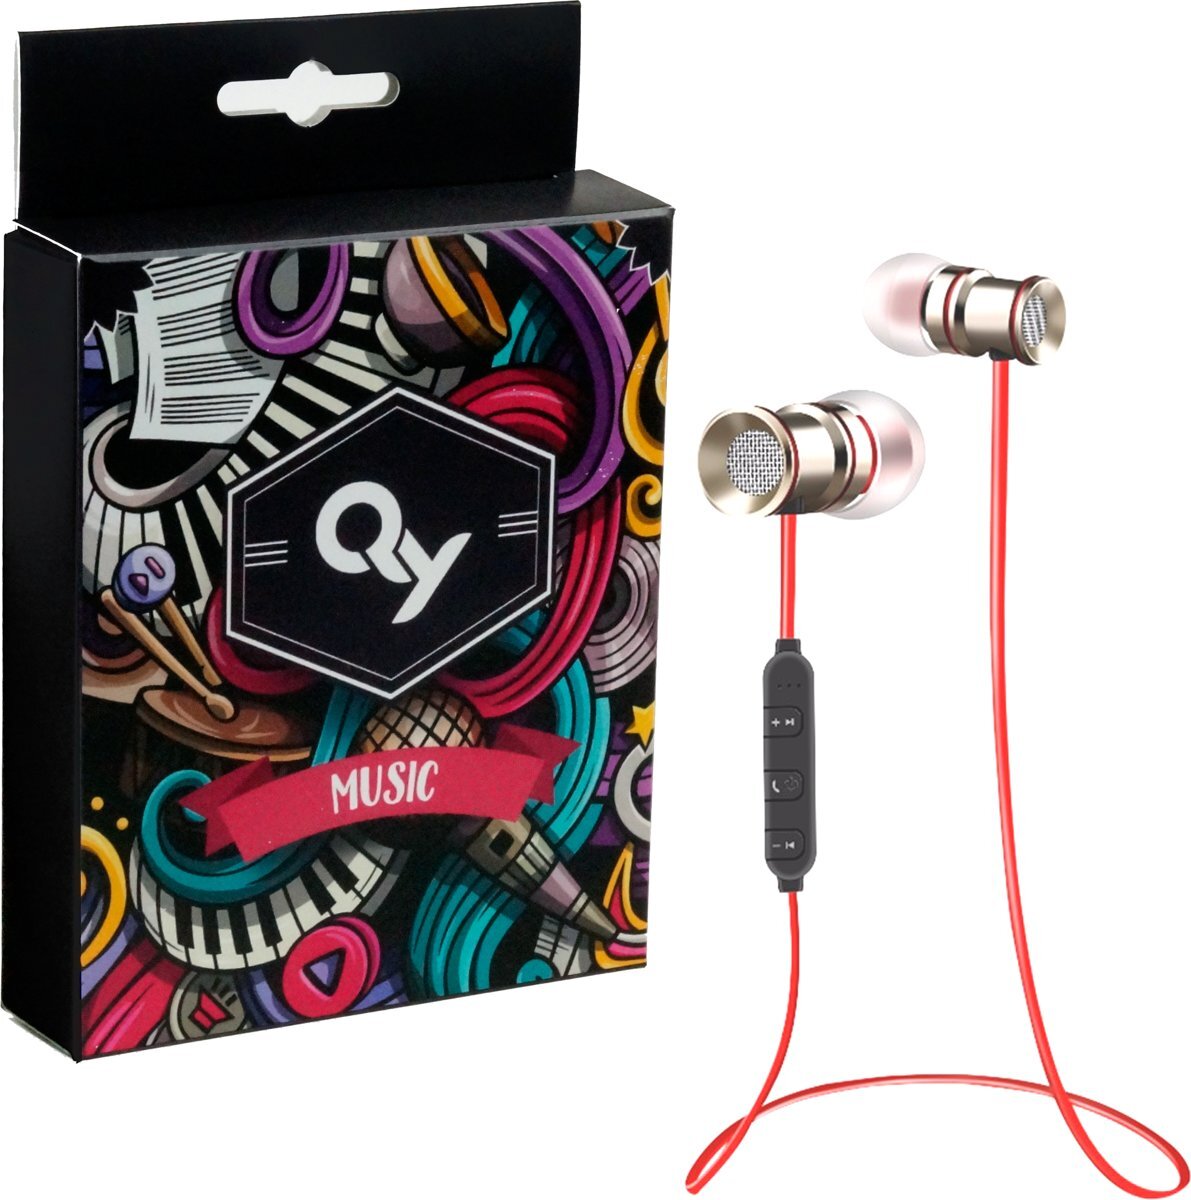 QY Bluetooth In-ear Draadloze Koptelefoon Z-71/ Headset / Oordopjes / Oortjes / Hoofdtelefoon / Oortelefoon / Headphones - Geschikt voor Hardloop & Sport - Draadloos / Wireless bereik tot 10meter - rood/zilver rood, zilver